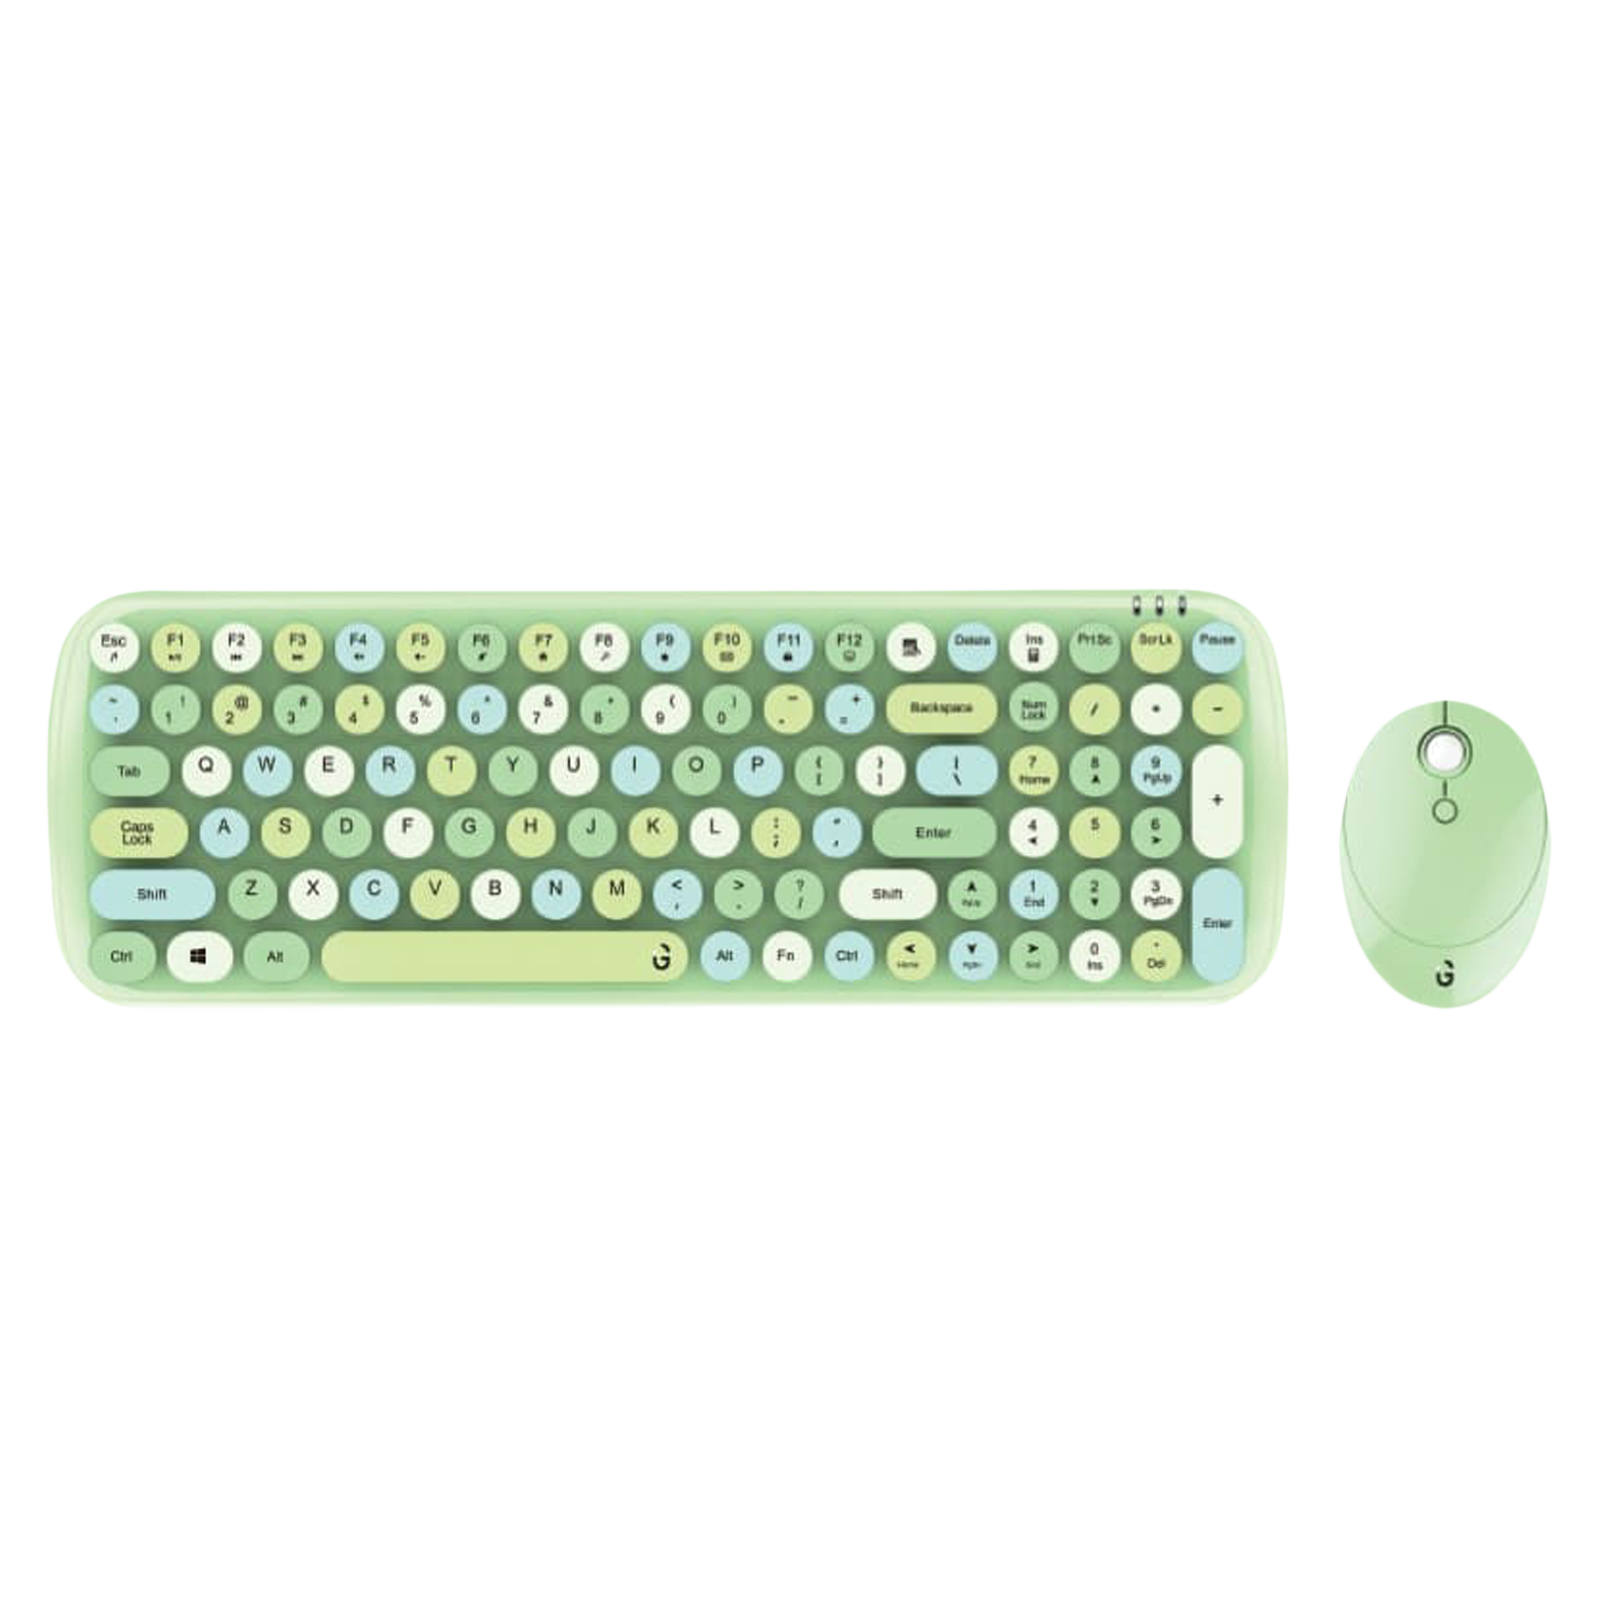 

iGear KeyBee Rechargeable Wireless Keyboard & Mouse Combo (100 Keys, 1600 DPI Adjustable, Removable Key Caps, Green), Dark green